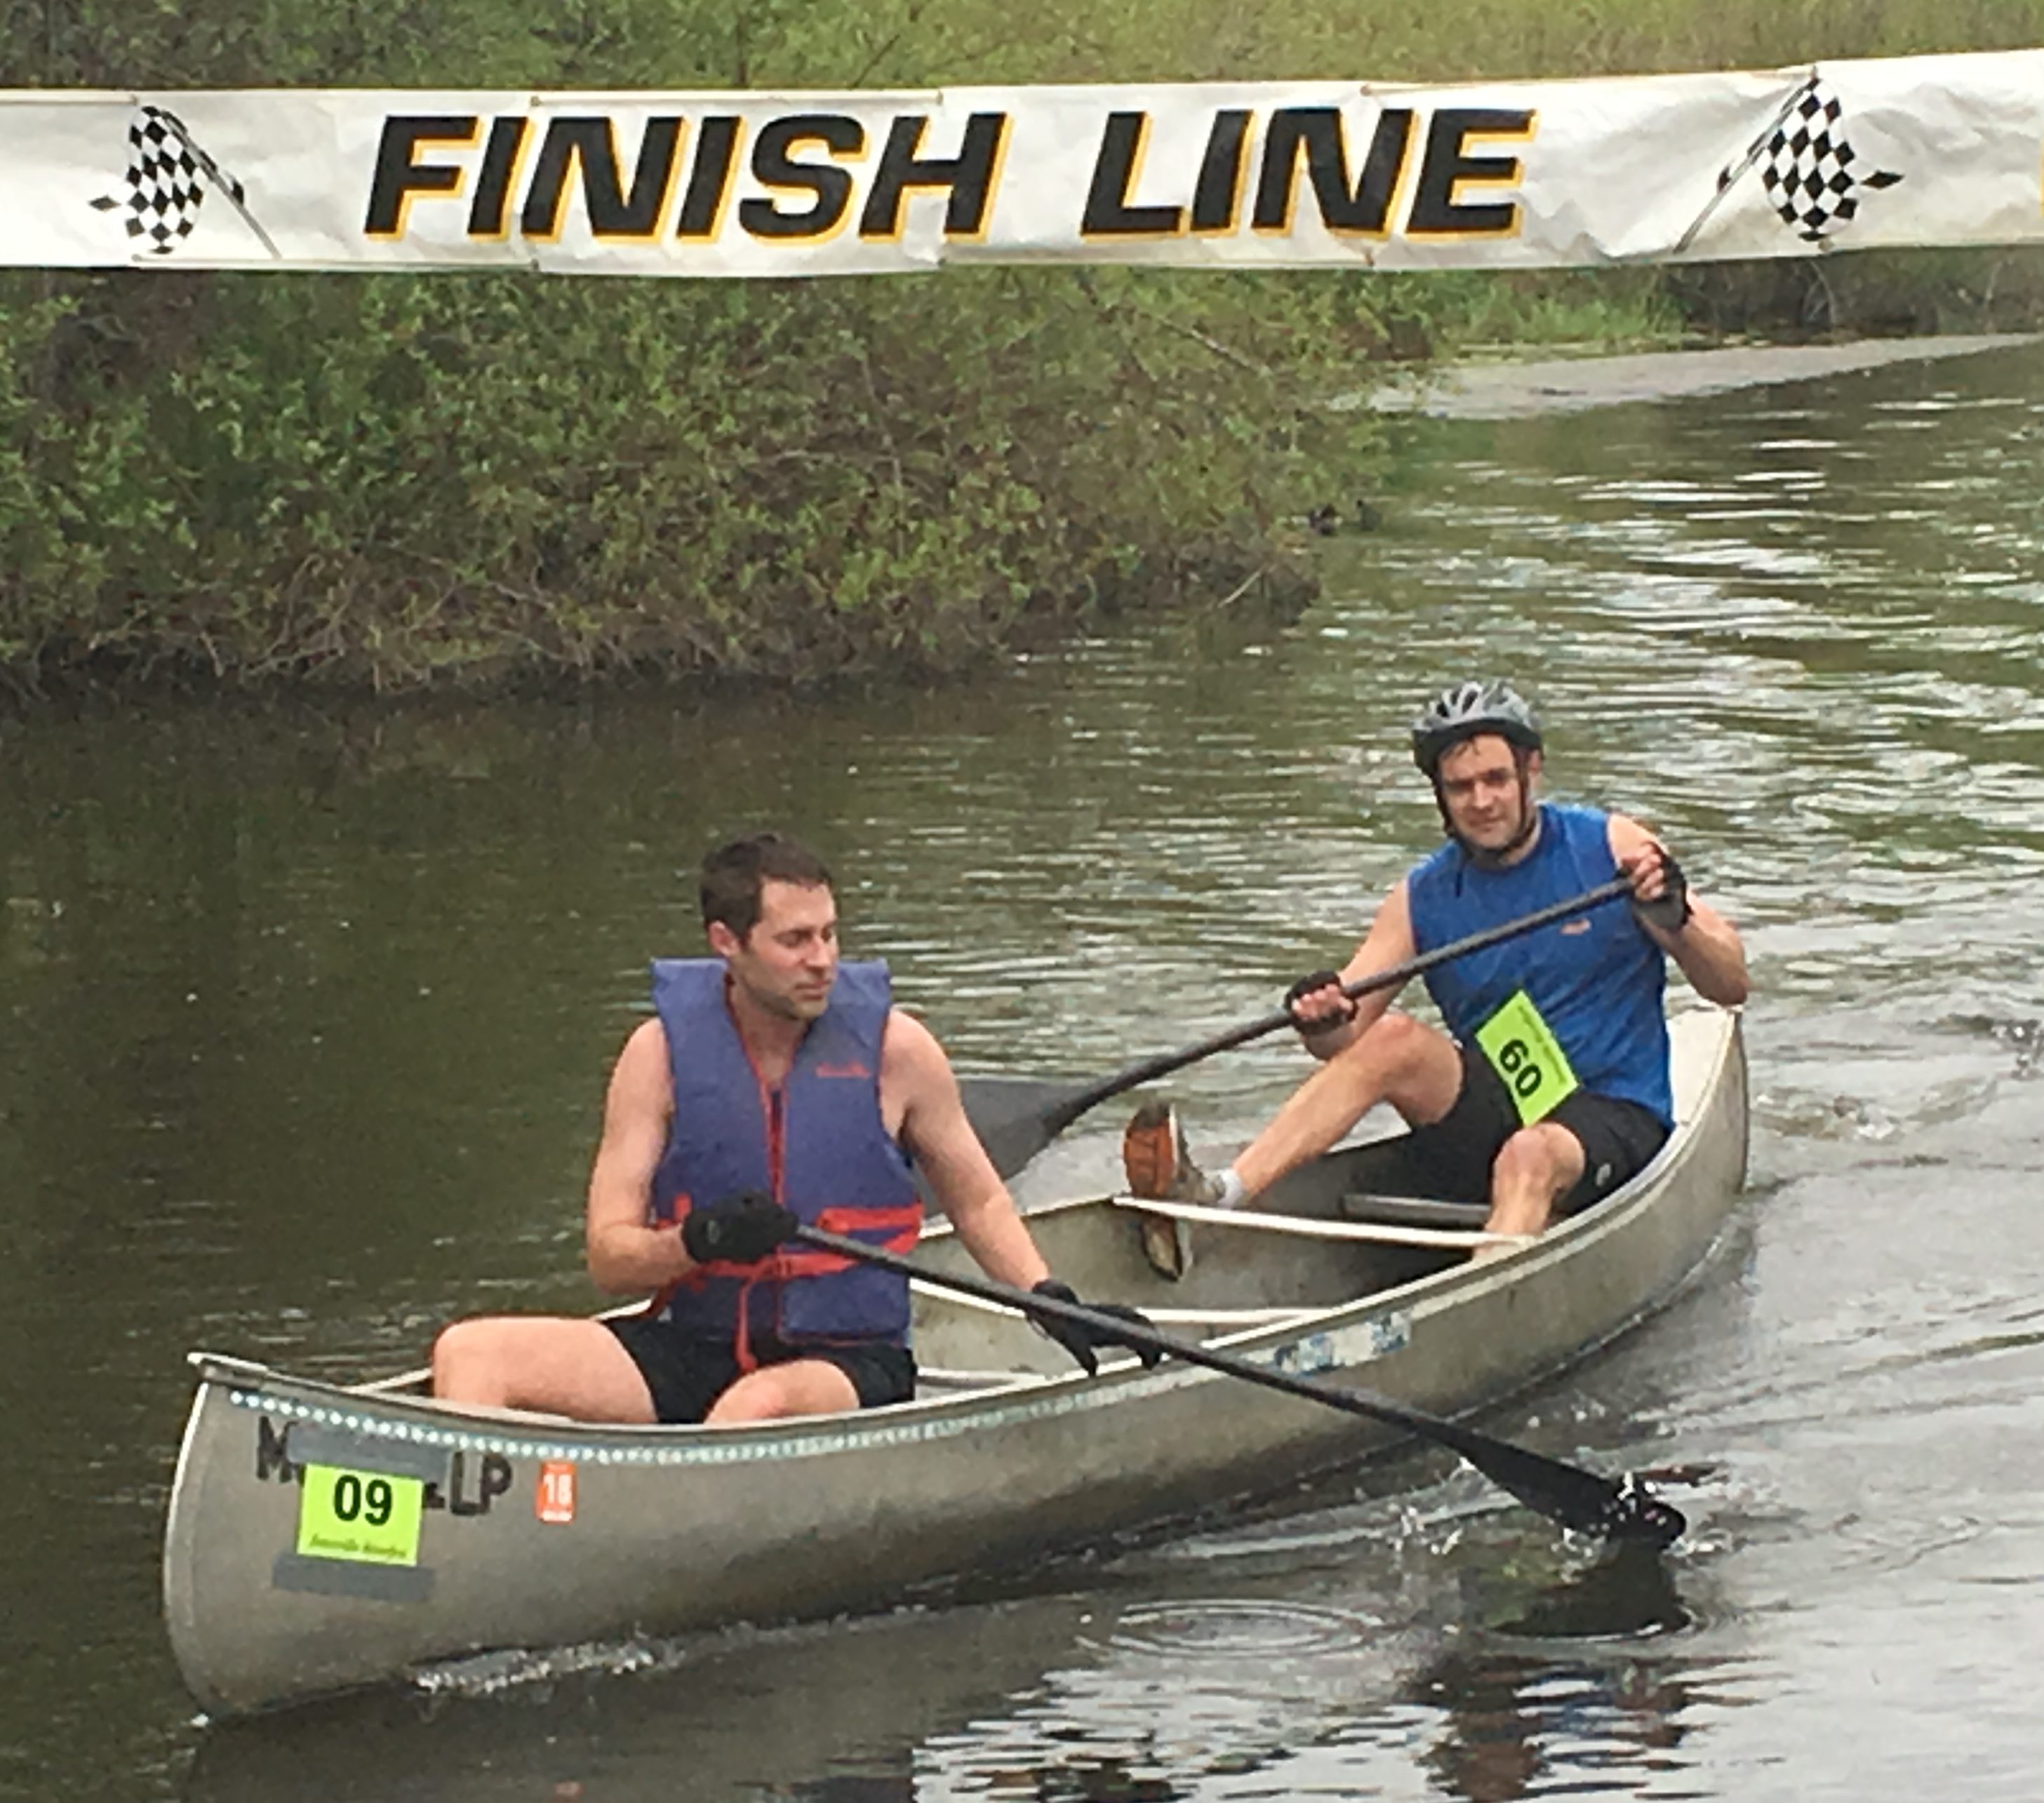 Riverfest Canoe Races on the St. Joseph River in Jonesville, MI. 3rd weekend in May.